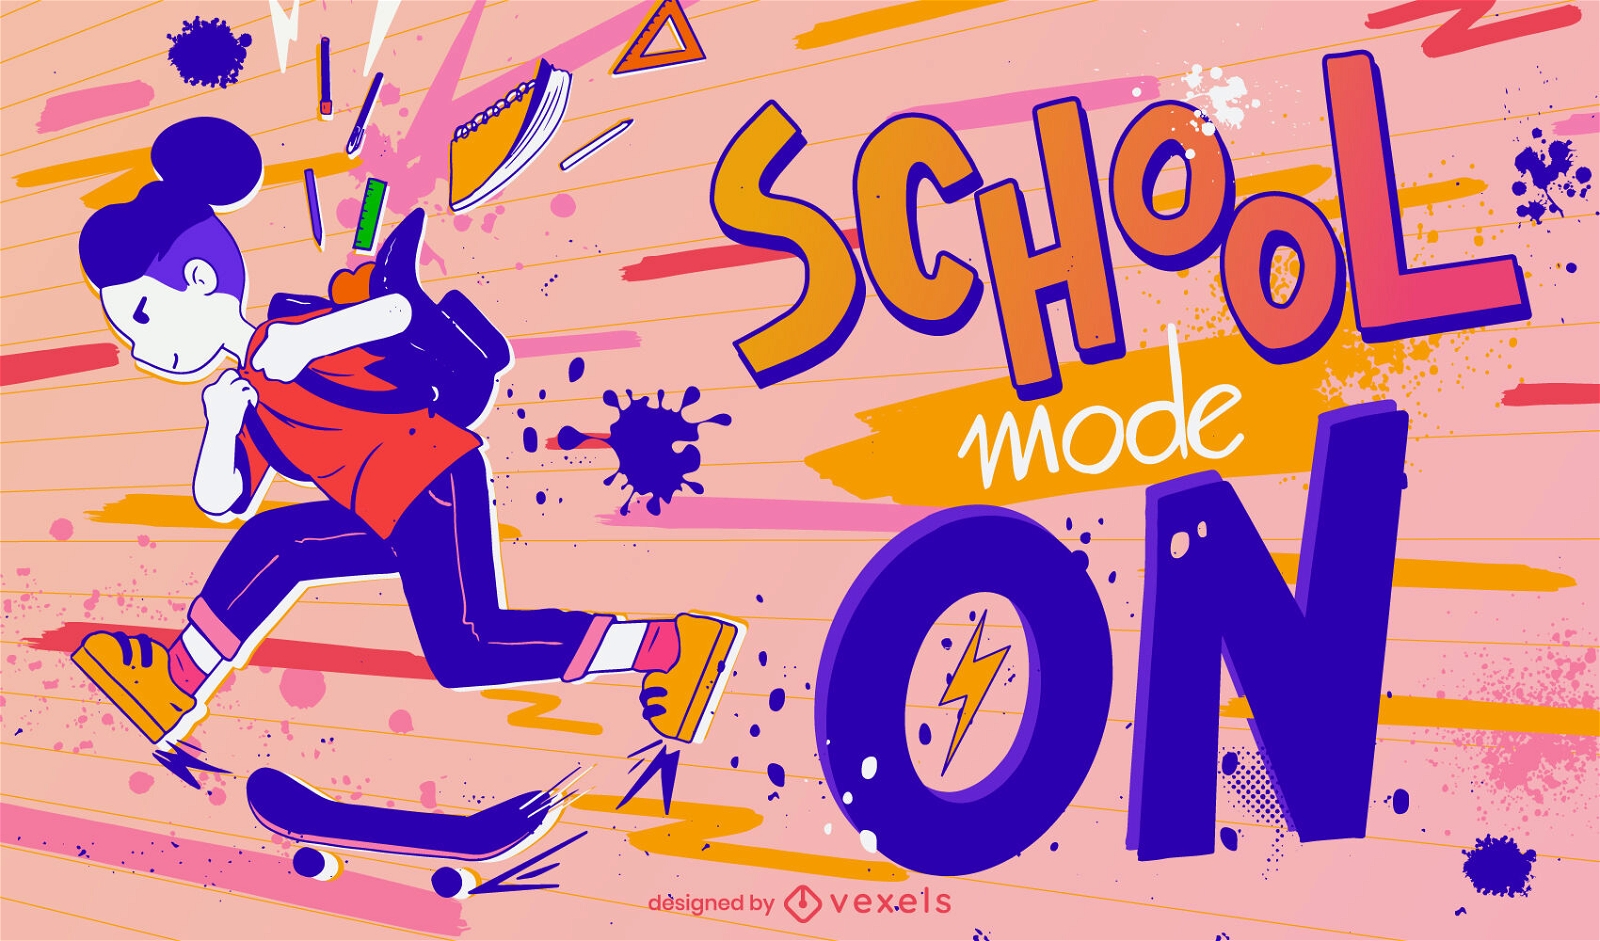 School mode on illustration